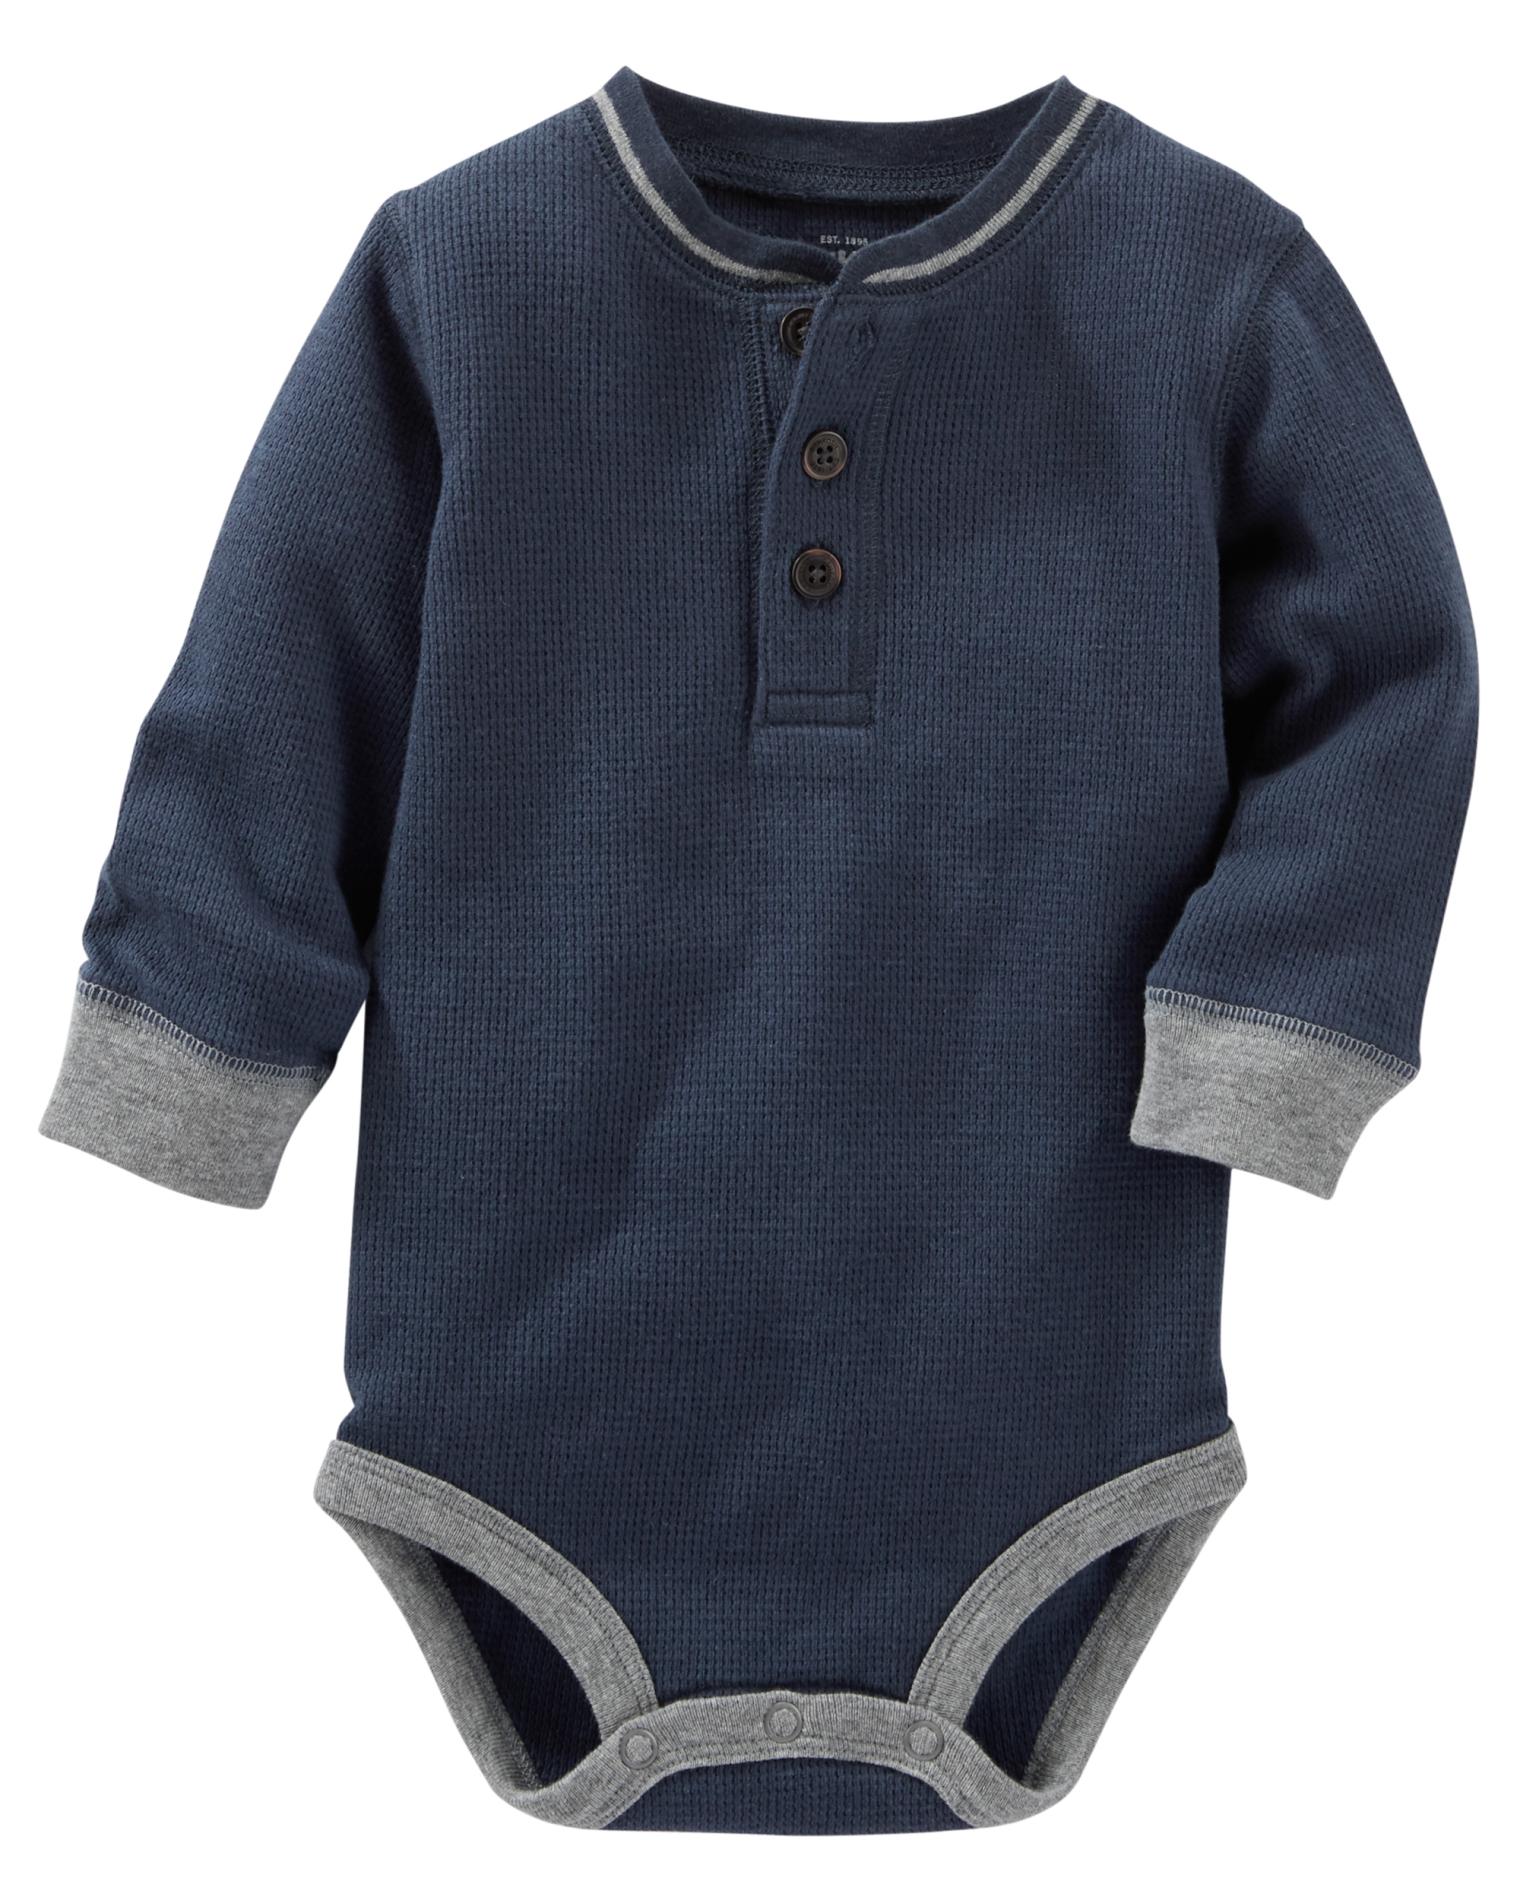 OshKosh Newborn & Infant Boys' Thermal Henley Bodysuit